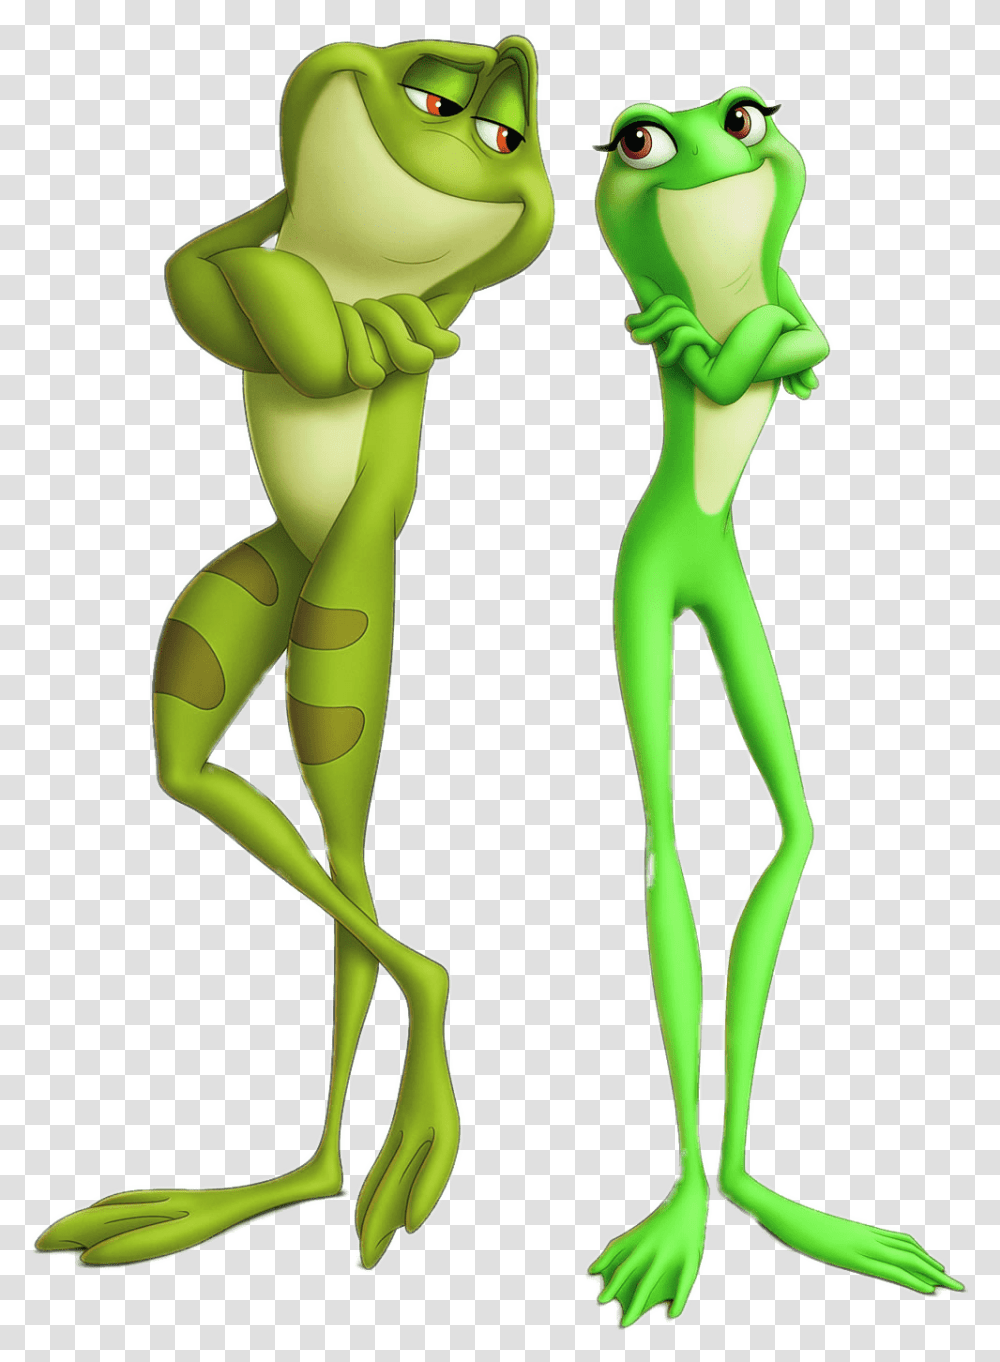 The Princess And The Frog Princess And The Frog The Frog, Alien, Skeleton, Figurine Transparent Png